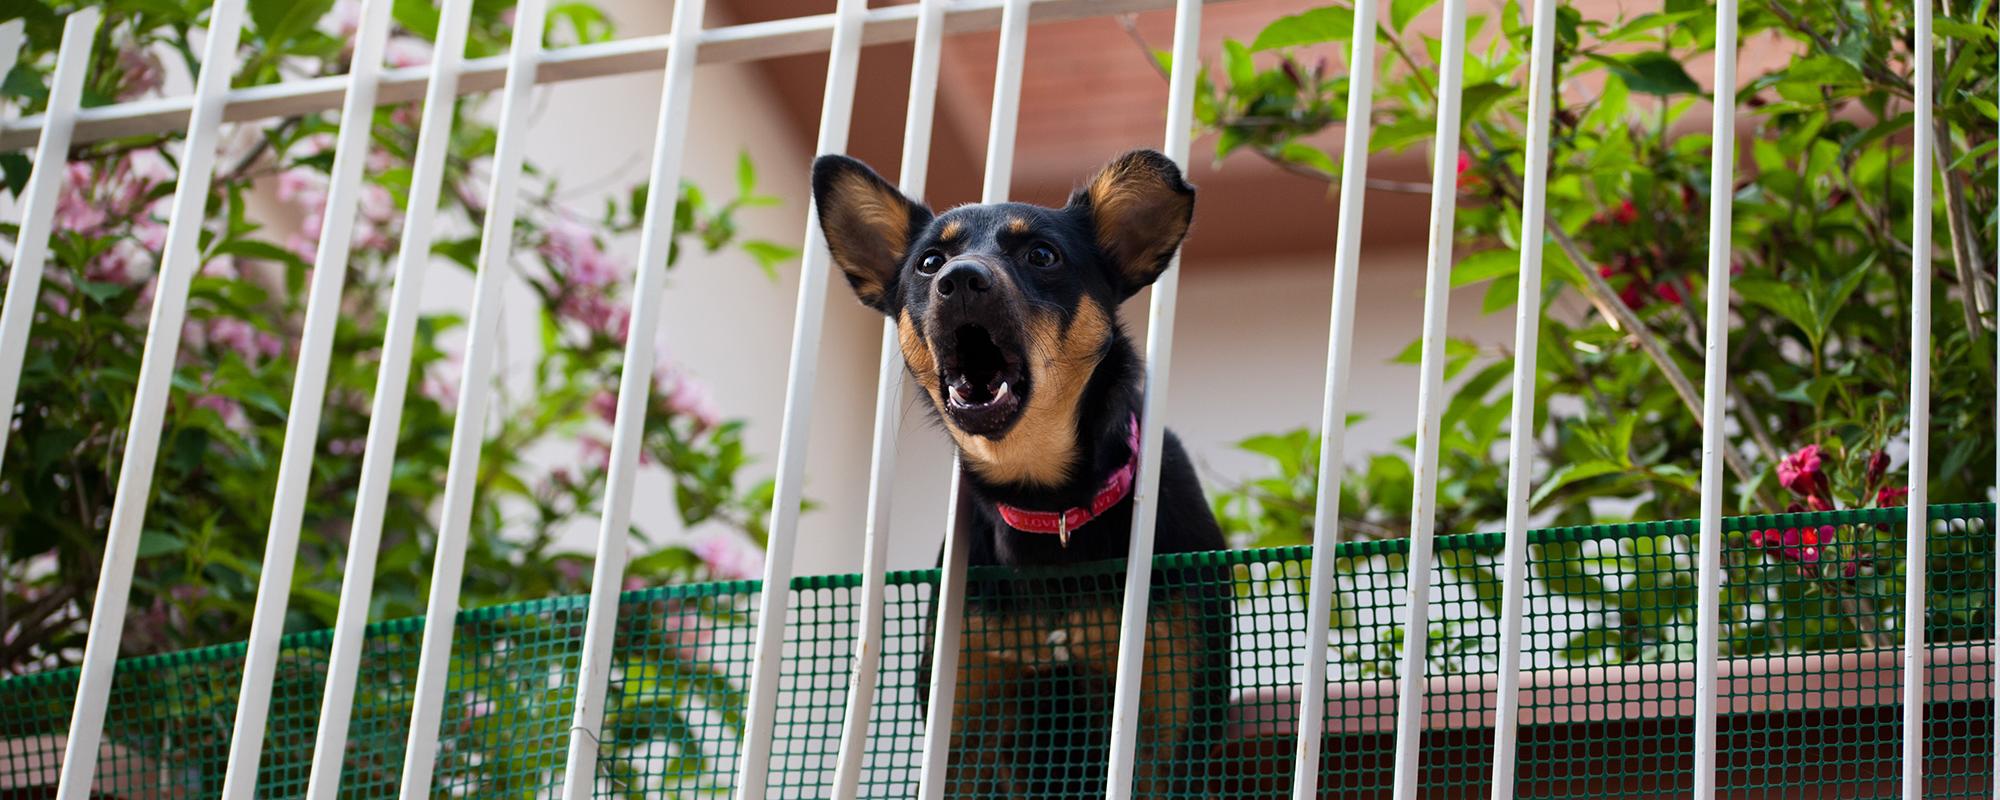 Hundegebell auf dem Balkon - ärgerlich für Nachbarn und Hundehalter